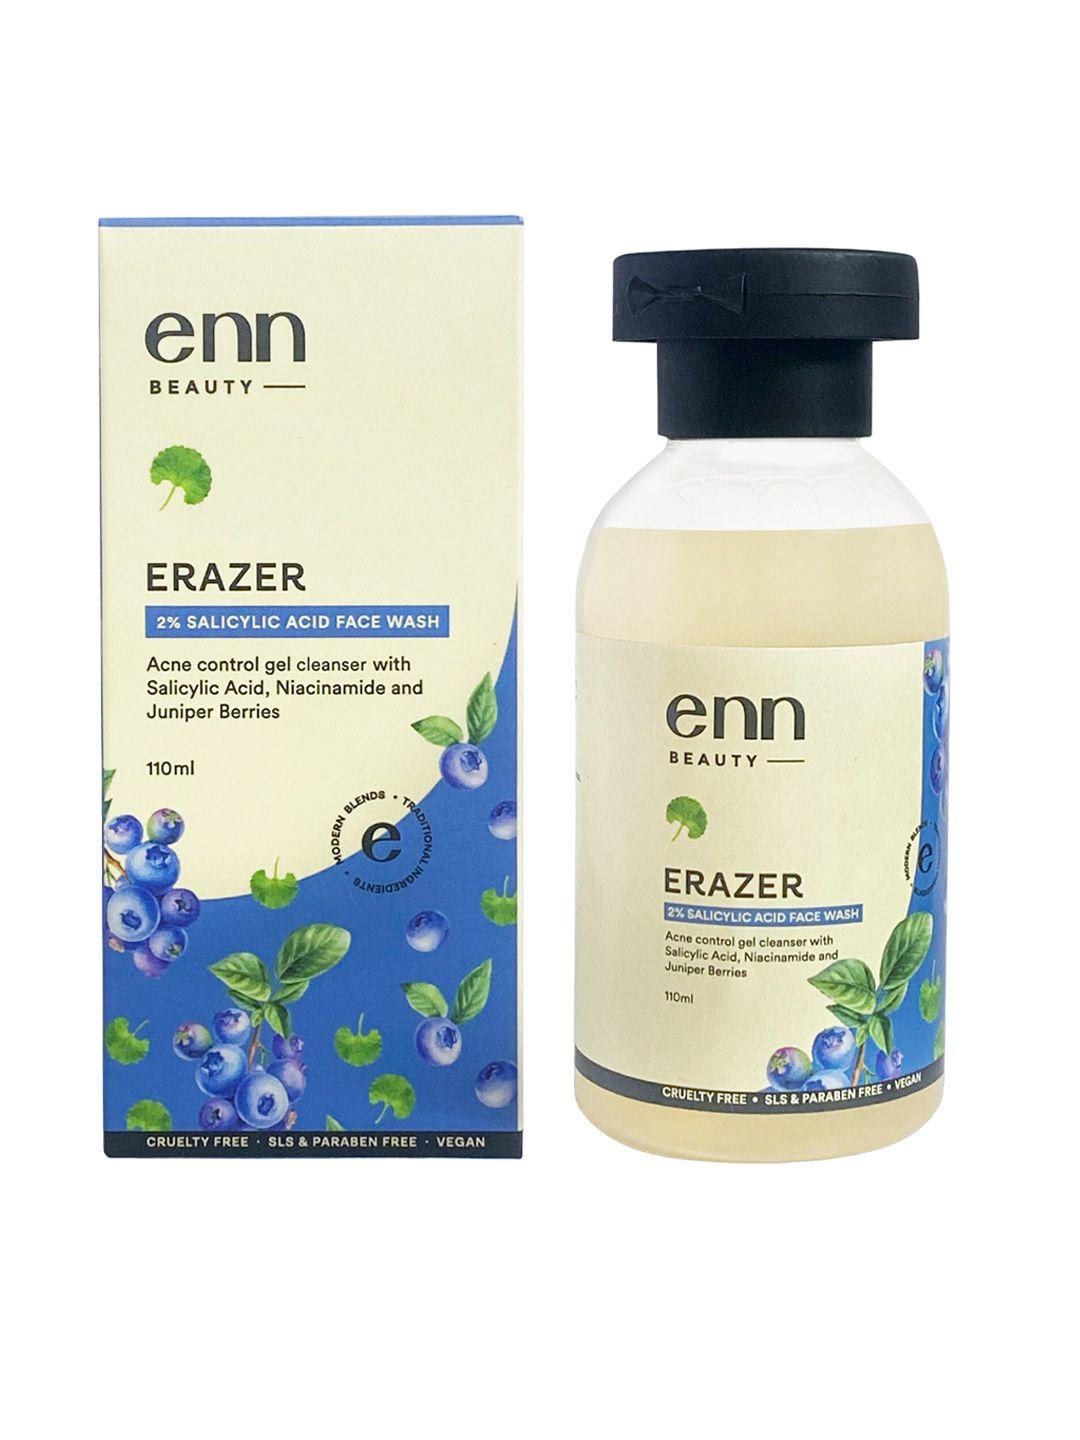 enn erazer 2 % salicylic acid face wash - 110ml